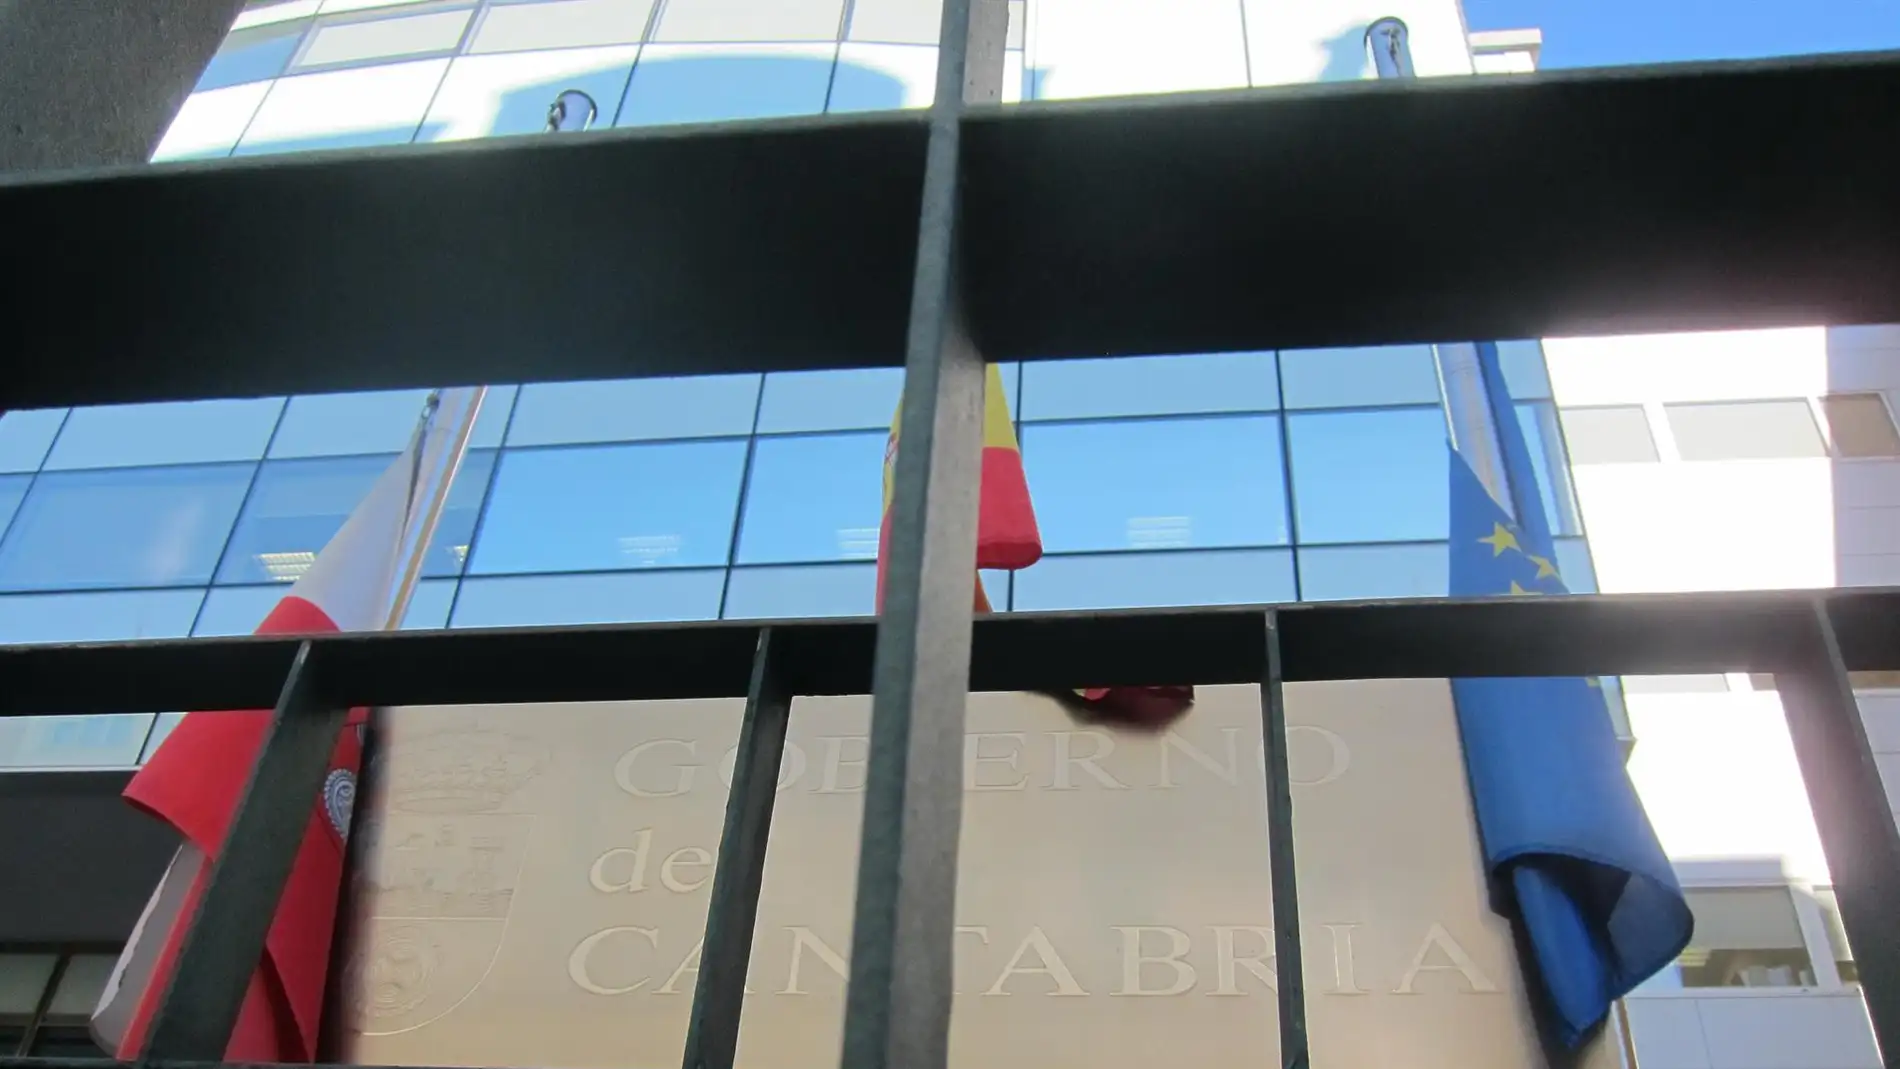 Banderas en la sede del Gobierno de Cantabria